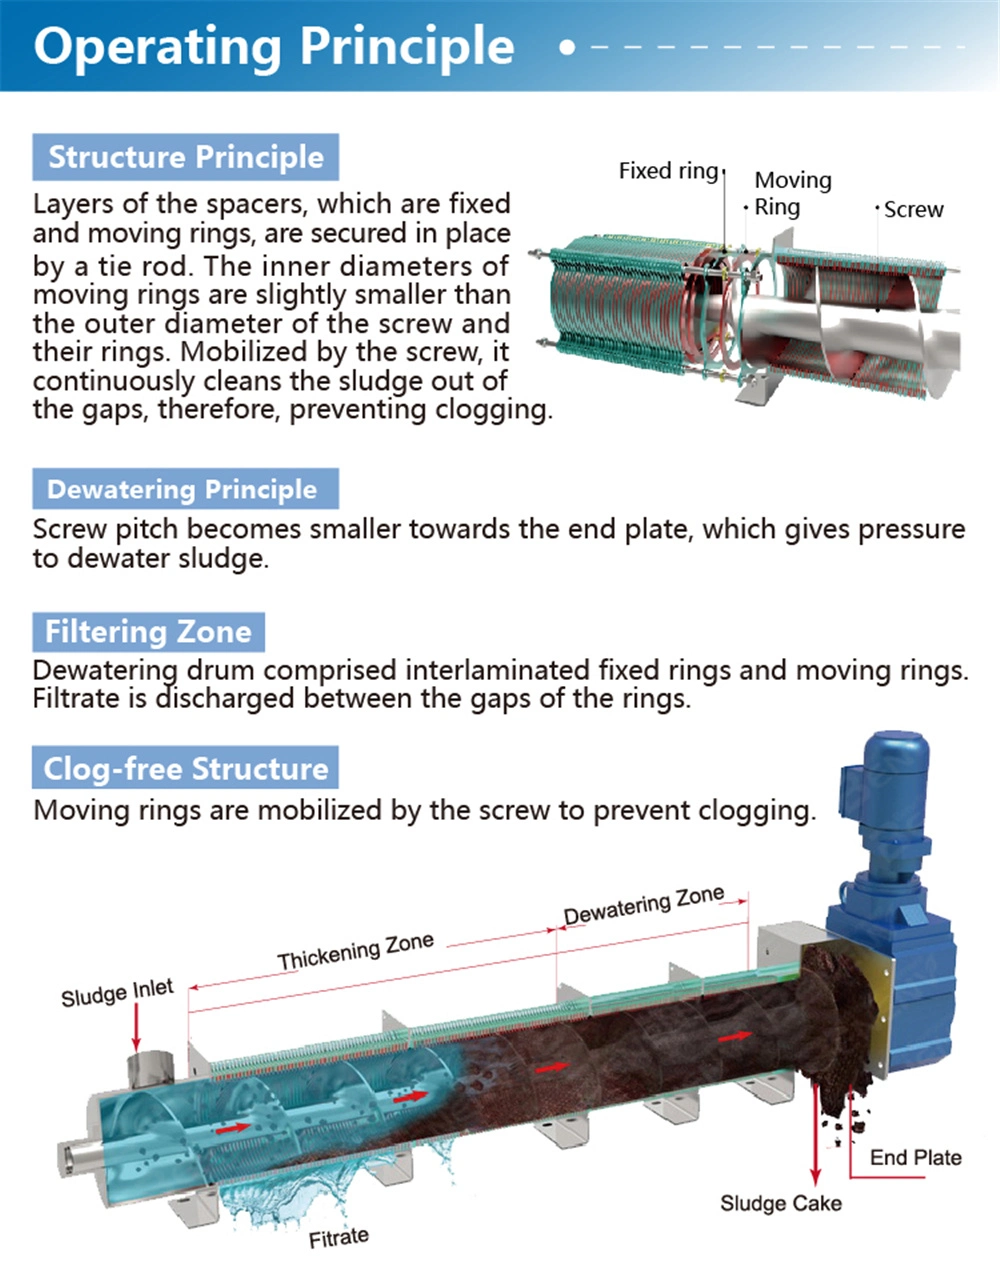 Wastewater Treatment Volute Screw Press Sludge Dewatering Machine Sewage Dewatering Equipment System